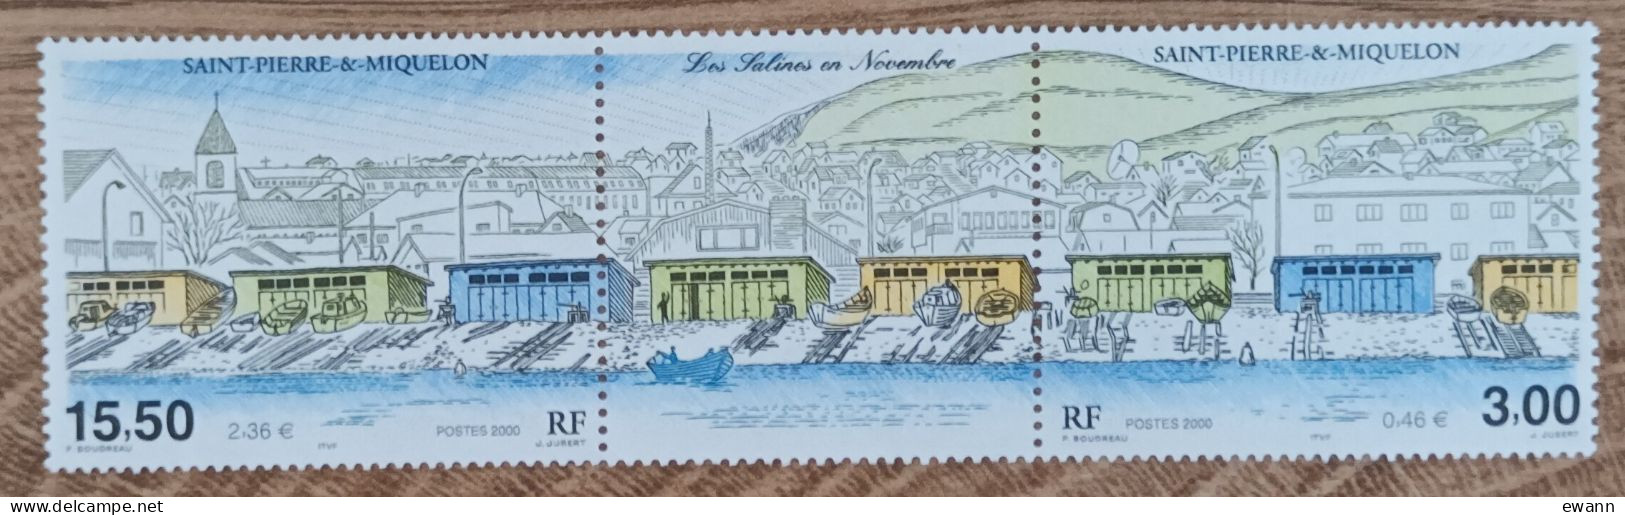 Saint Pierre Et Miquelon - YT N°724, 725 - Les Salines En Novembre - 2000 - Neuf - Unused Stamps